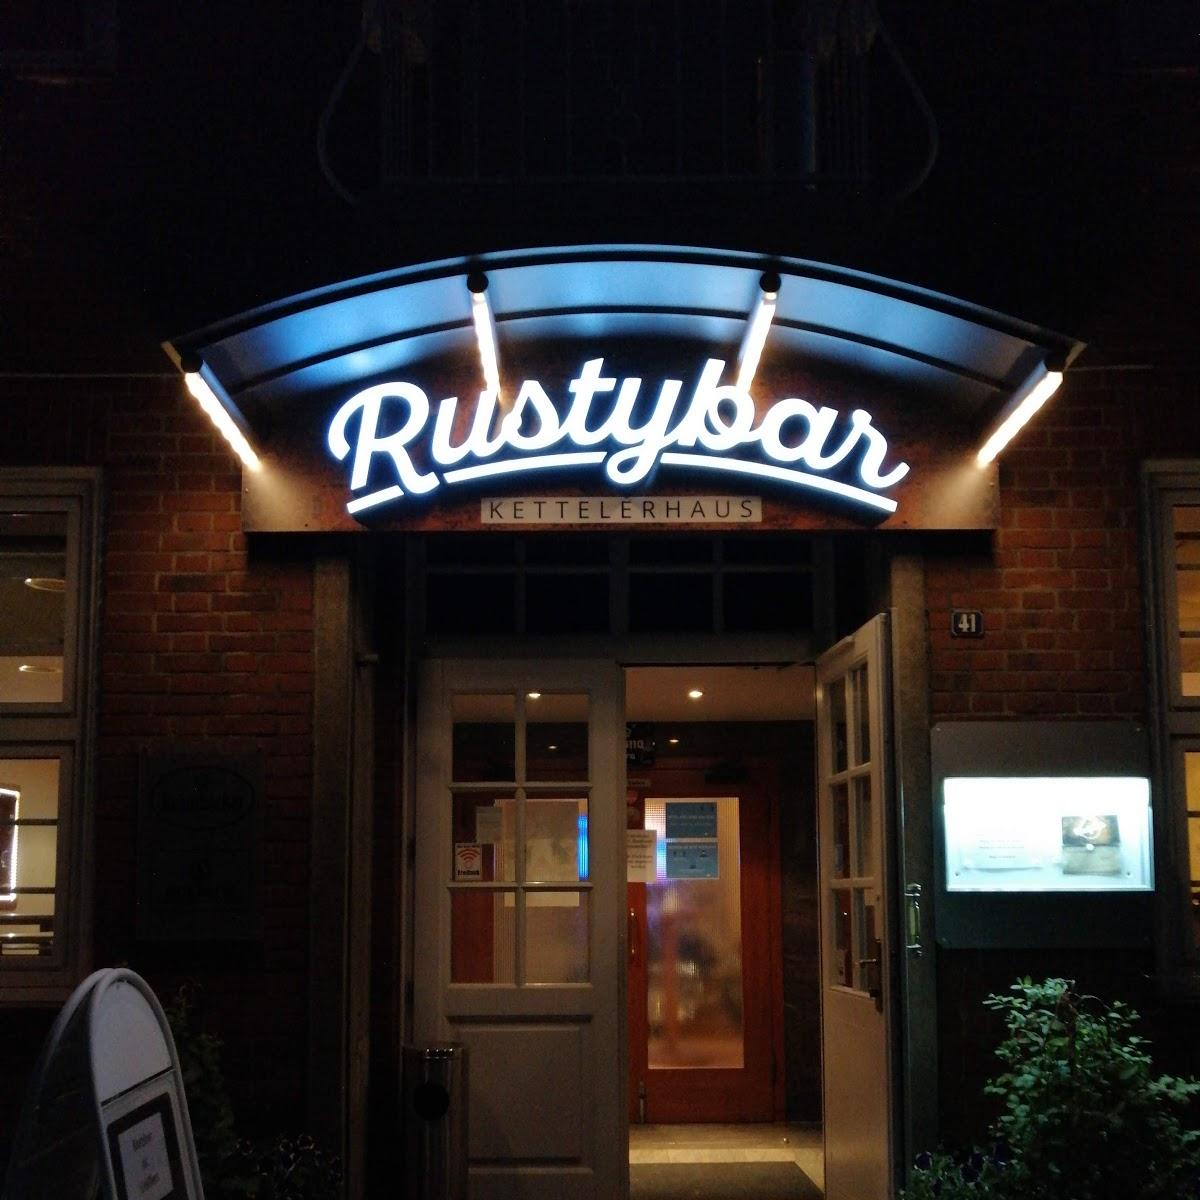 Restaurant "Rustybar_Kettelerhaus" in Stadtlohn